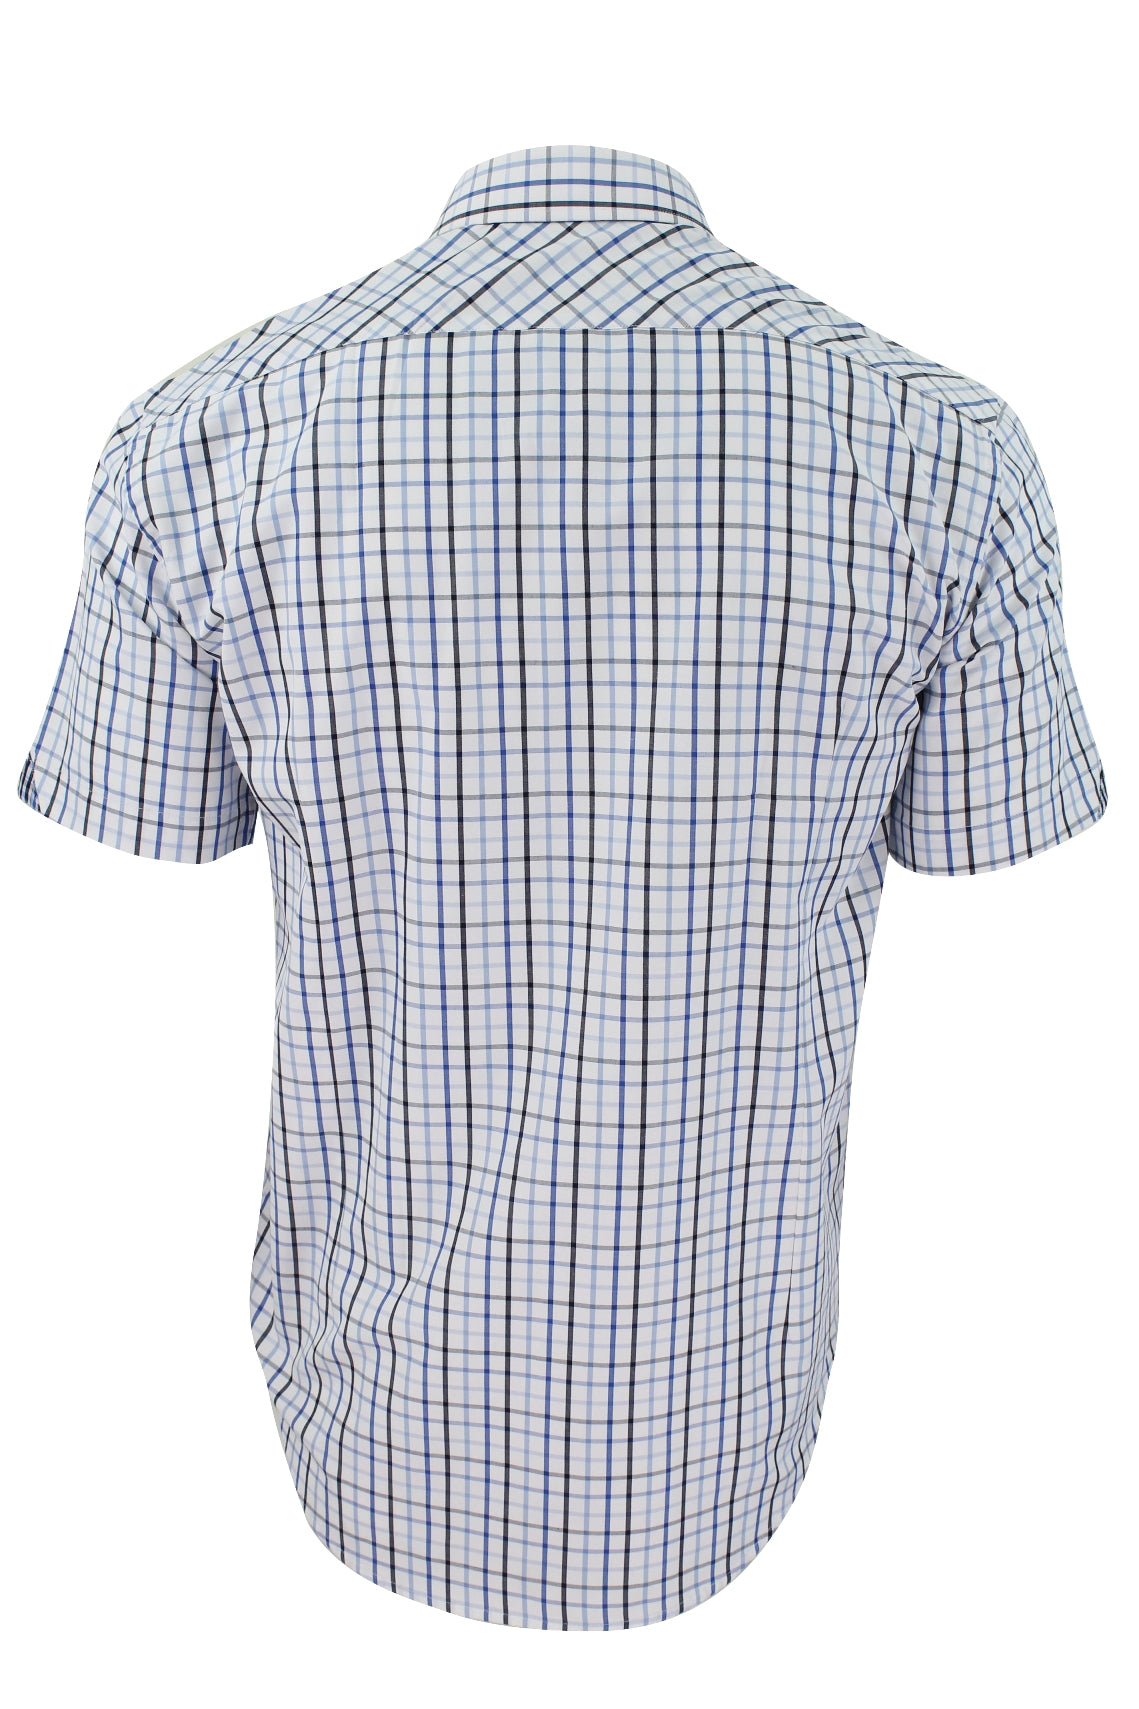 Xact Mens Check Shirt Short Sleeves-3